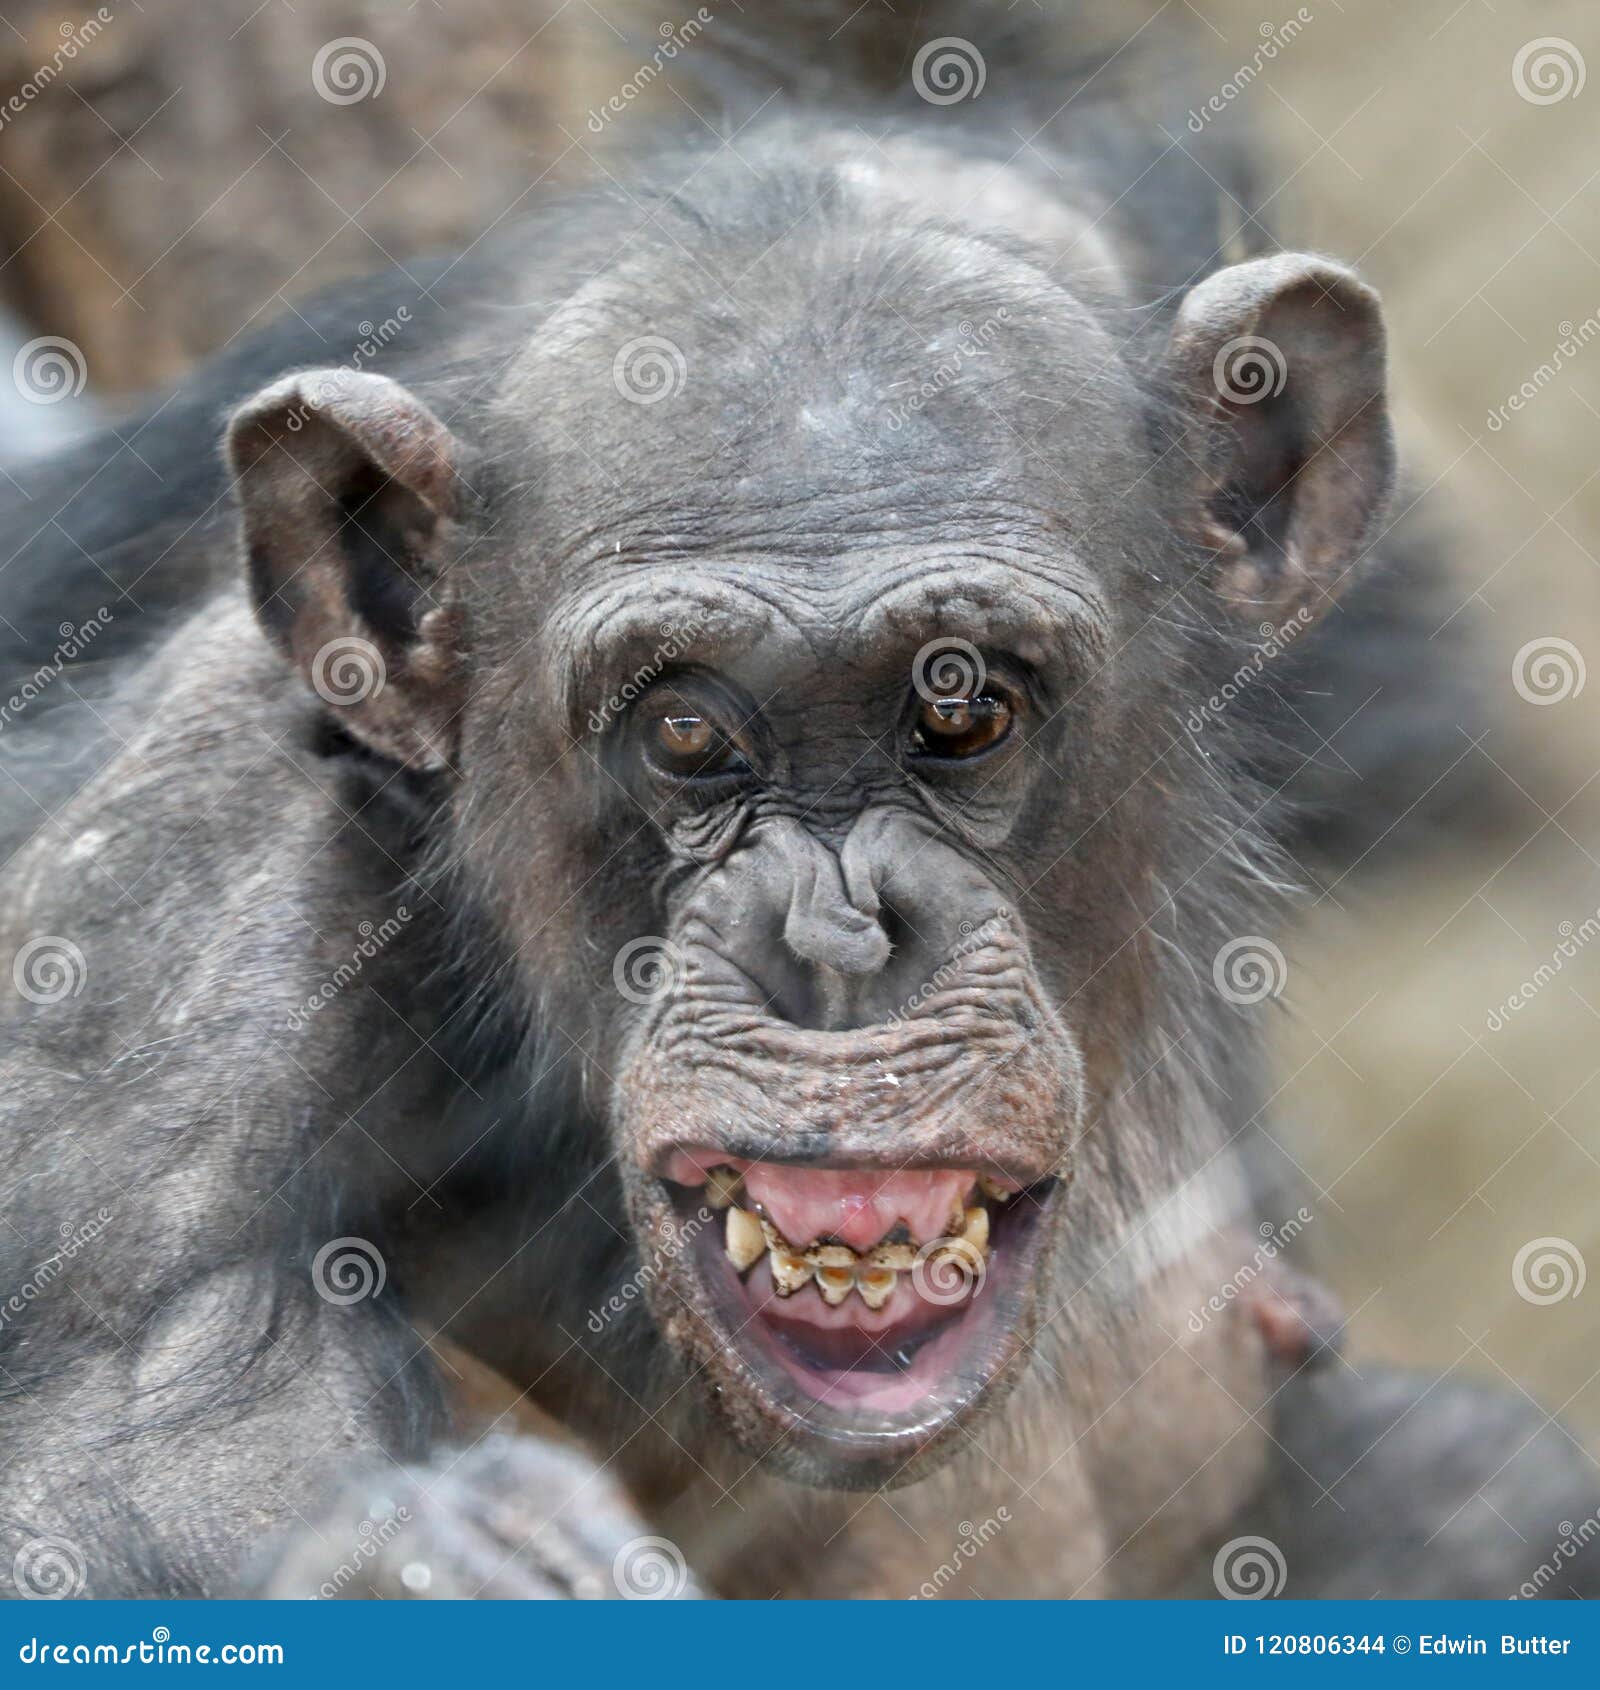 retrato-adulto-del-chimpanc%C3%A9-120806344.jpg